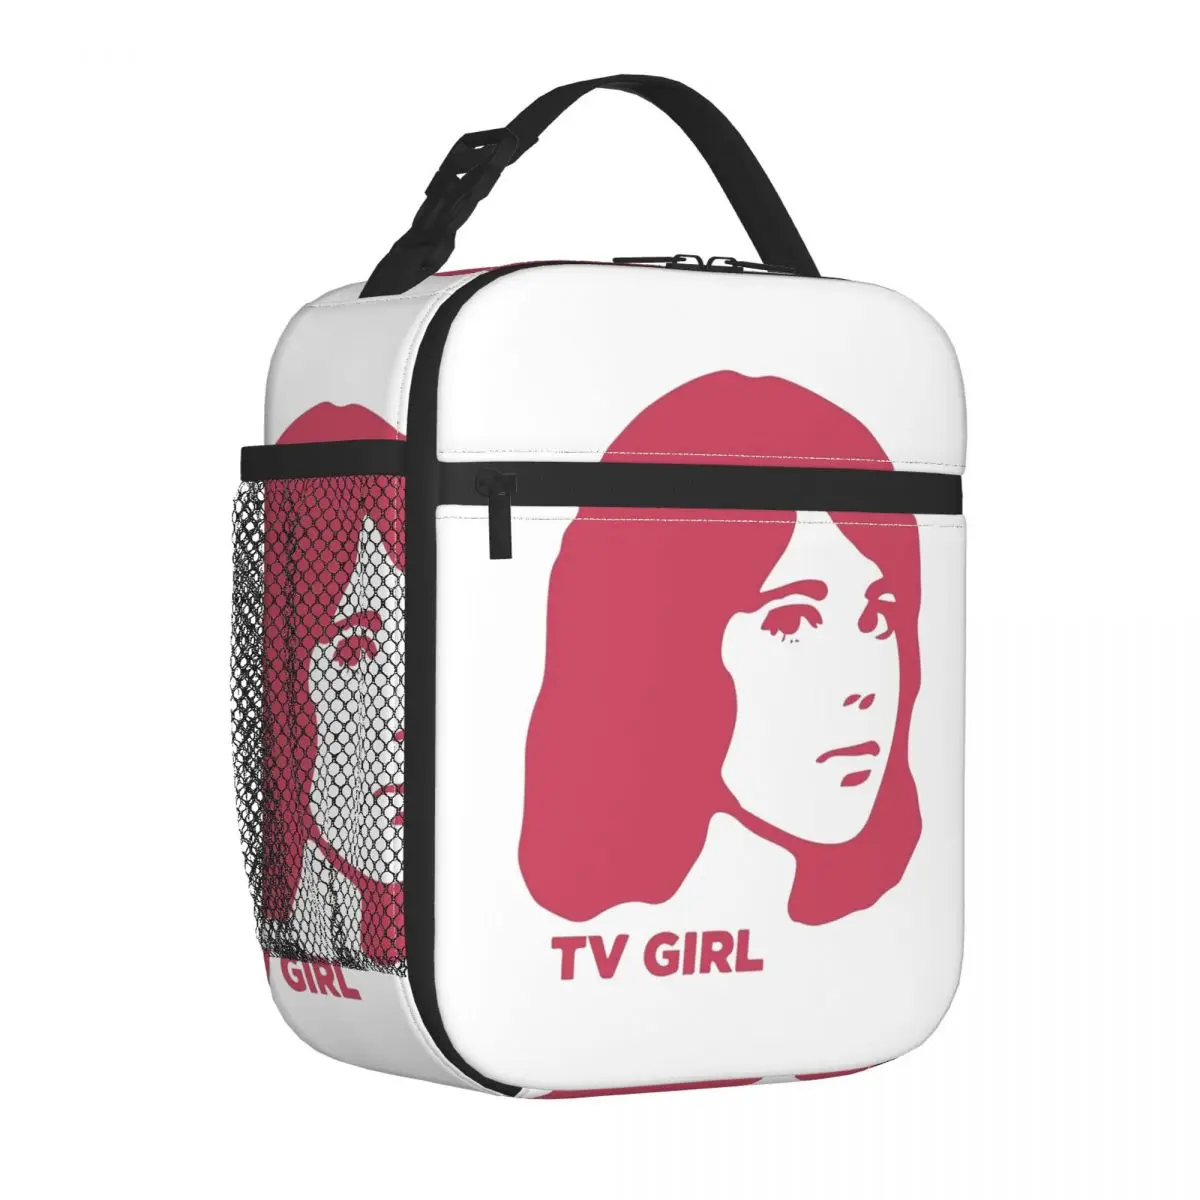 

Теплоизолированная обеденная сумка TV Girl Pink Dream Girl с логотипом, для путешествий, рок-музыкальная группа, Портативная сумка для еды, охлаждающие термоланч-боксы